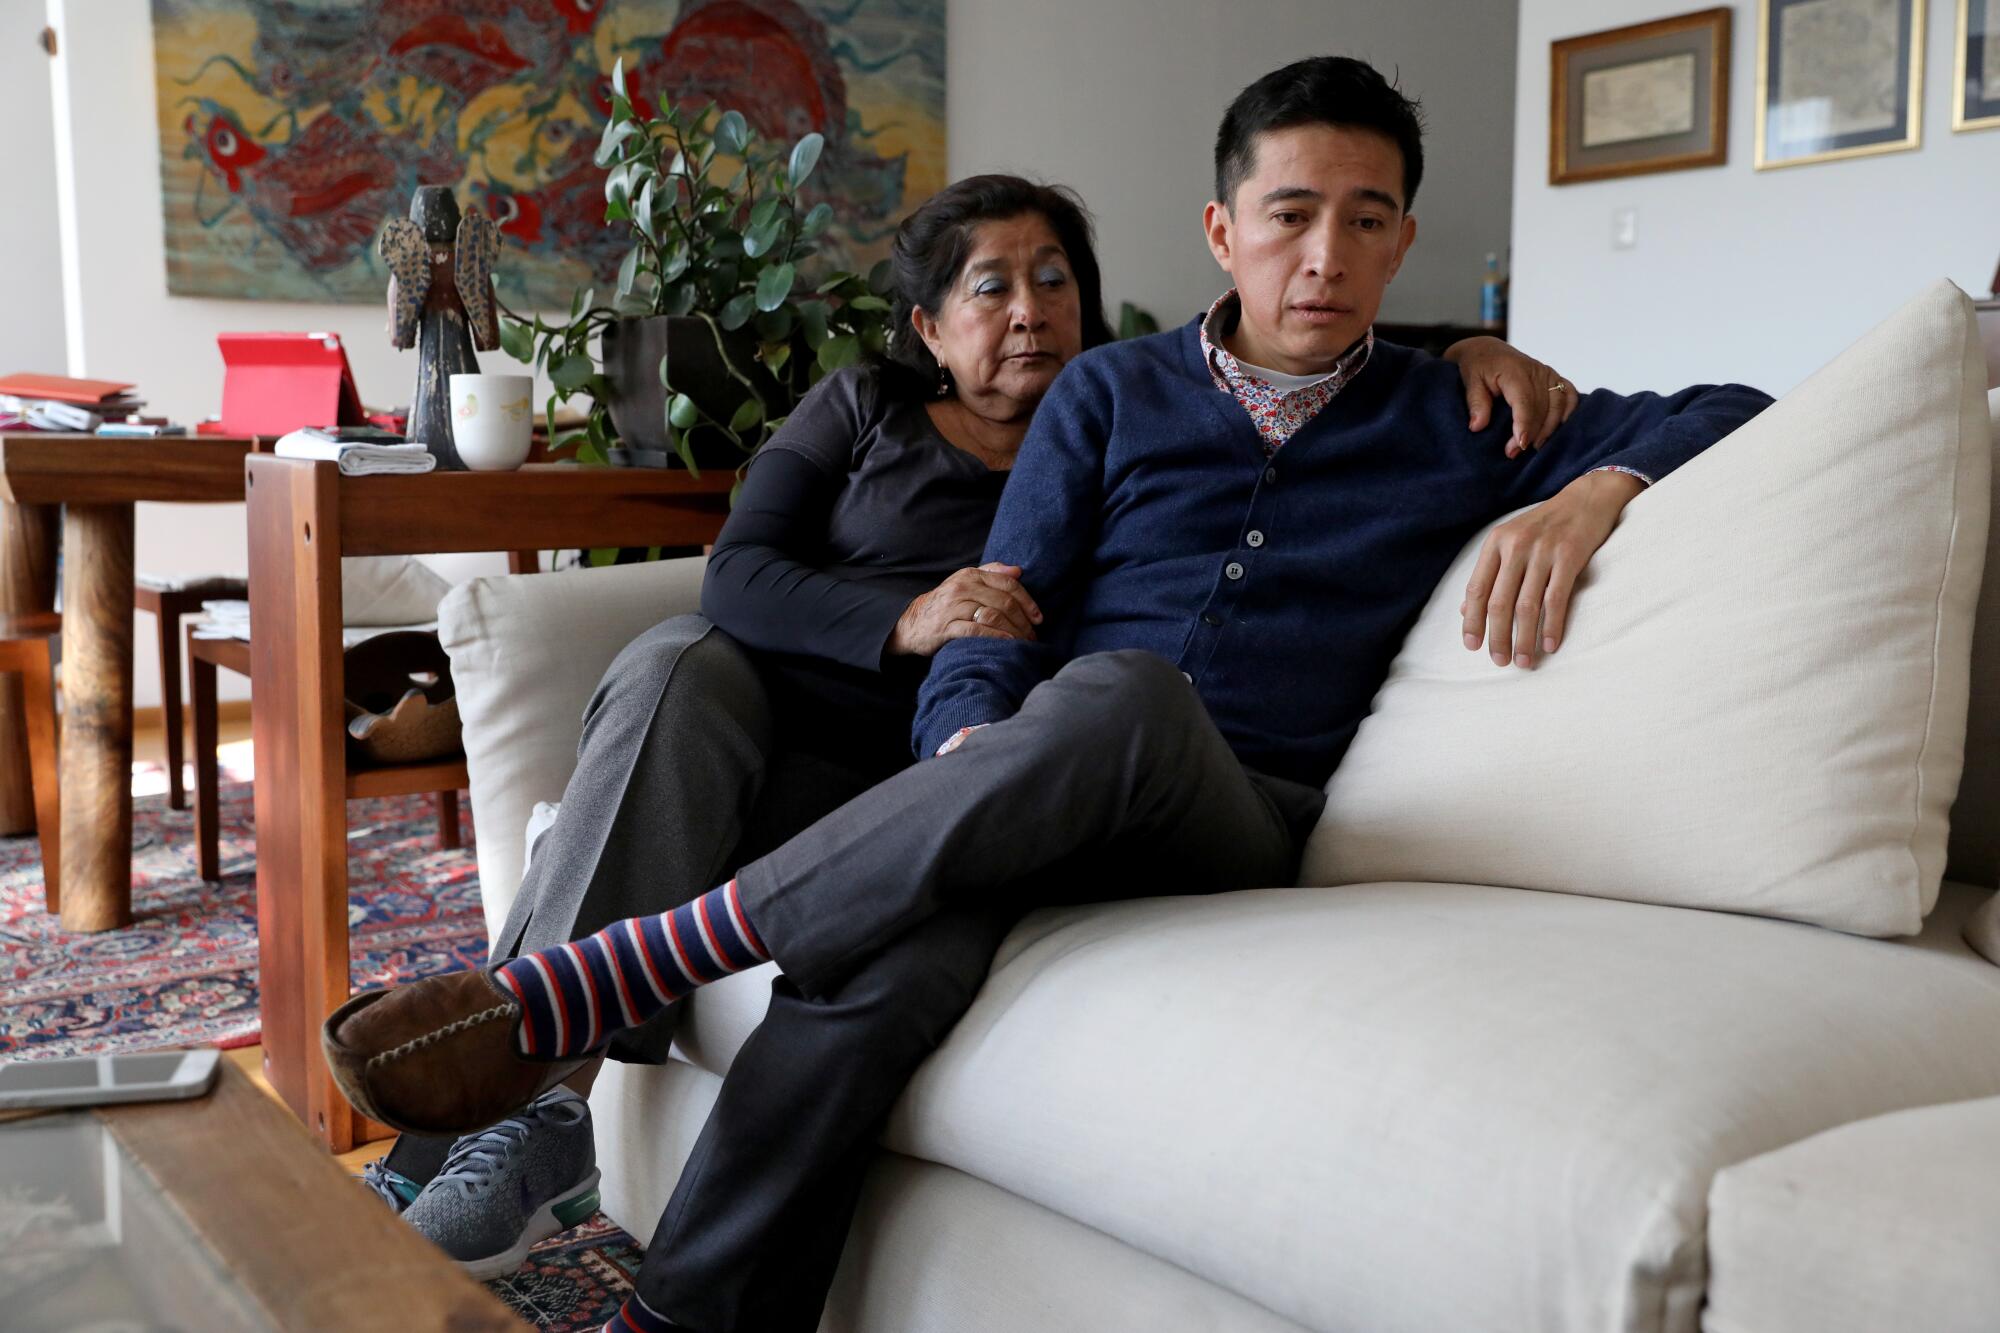 Maricela Peñaloza Flores, wife of Albino Quiroz Sandoval, with son Juan Carlos Quiroz at his apartment in Mexico City.